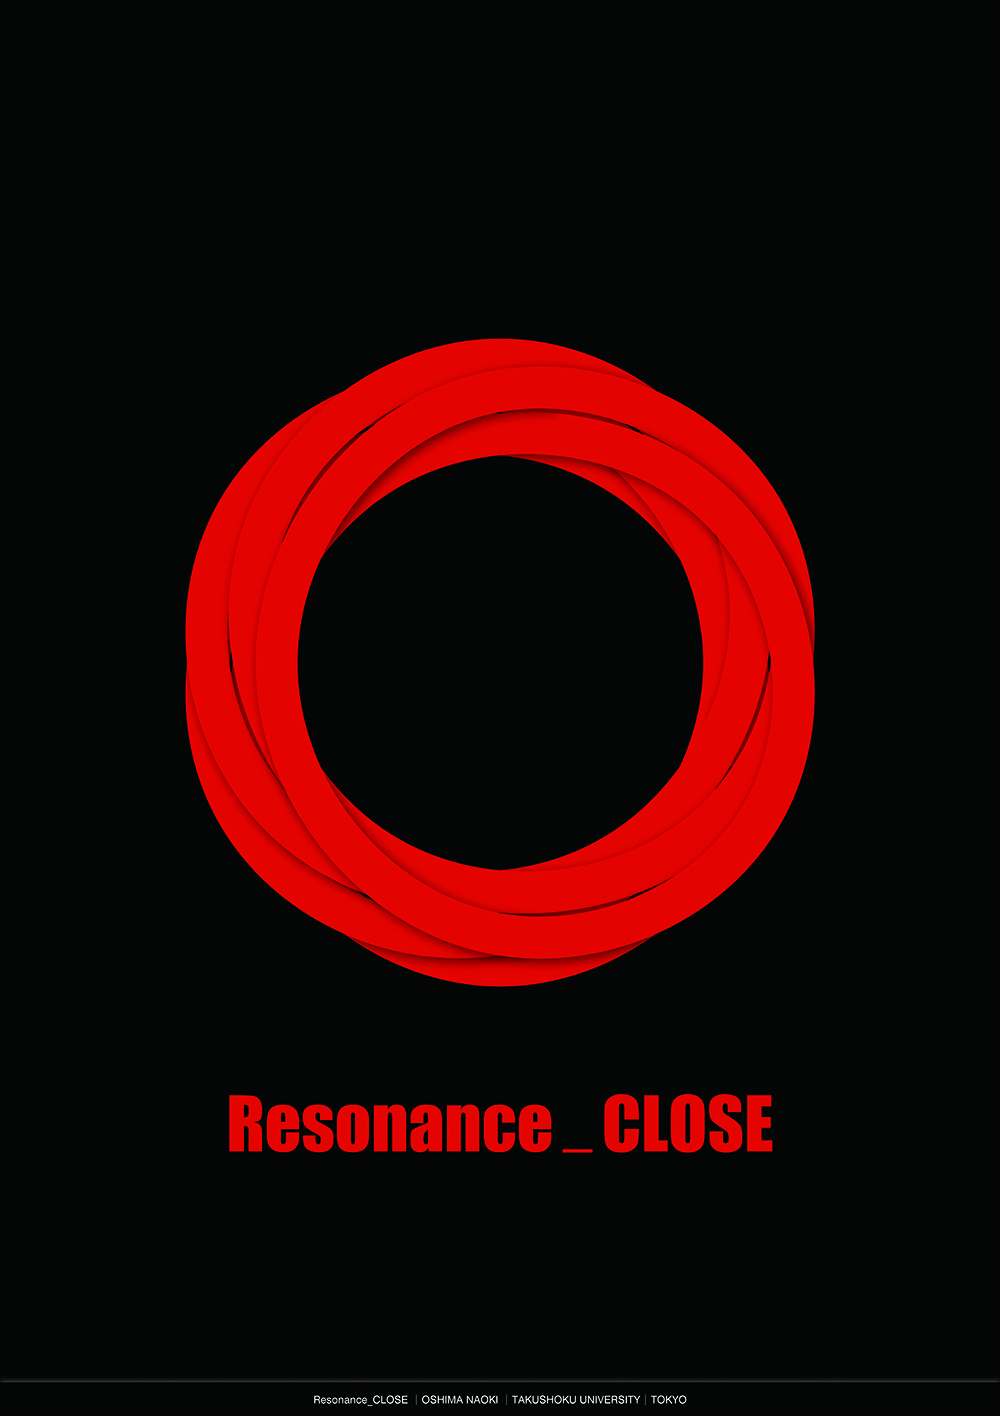 Resonance_CLOSE